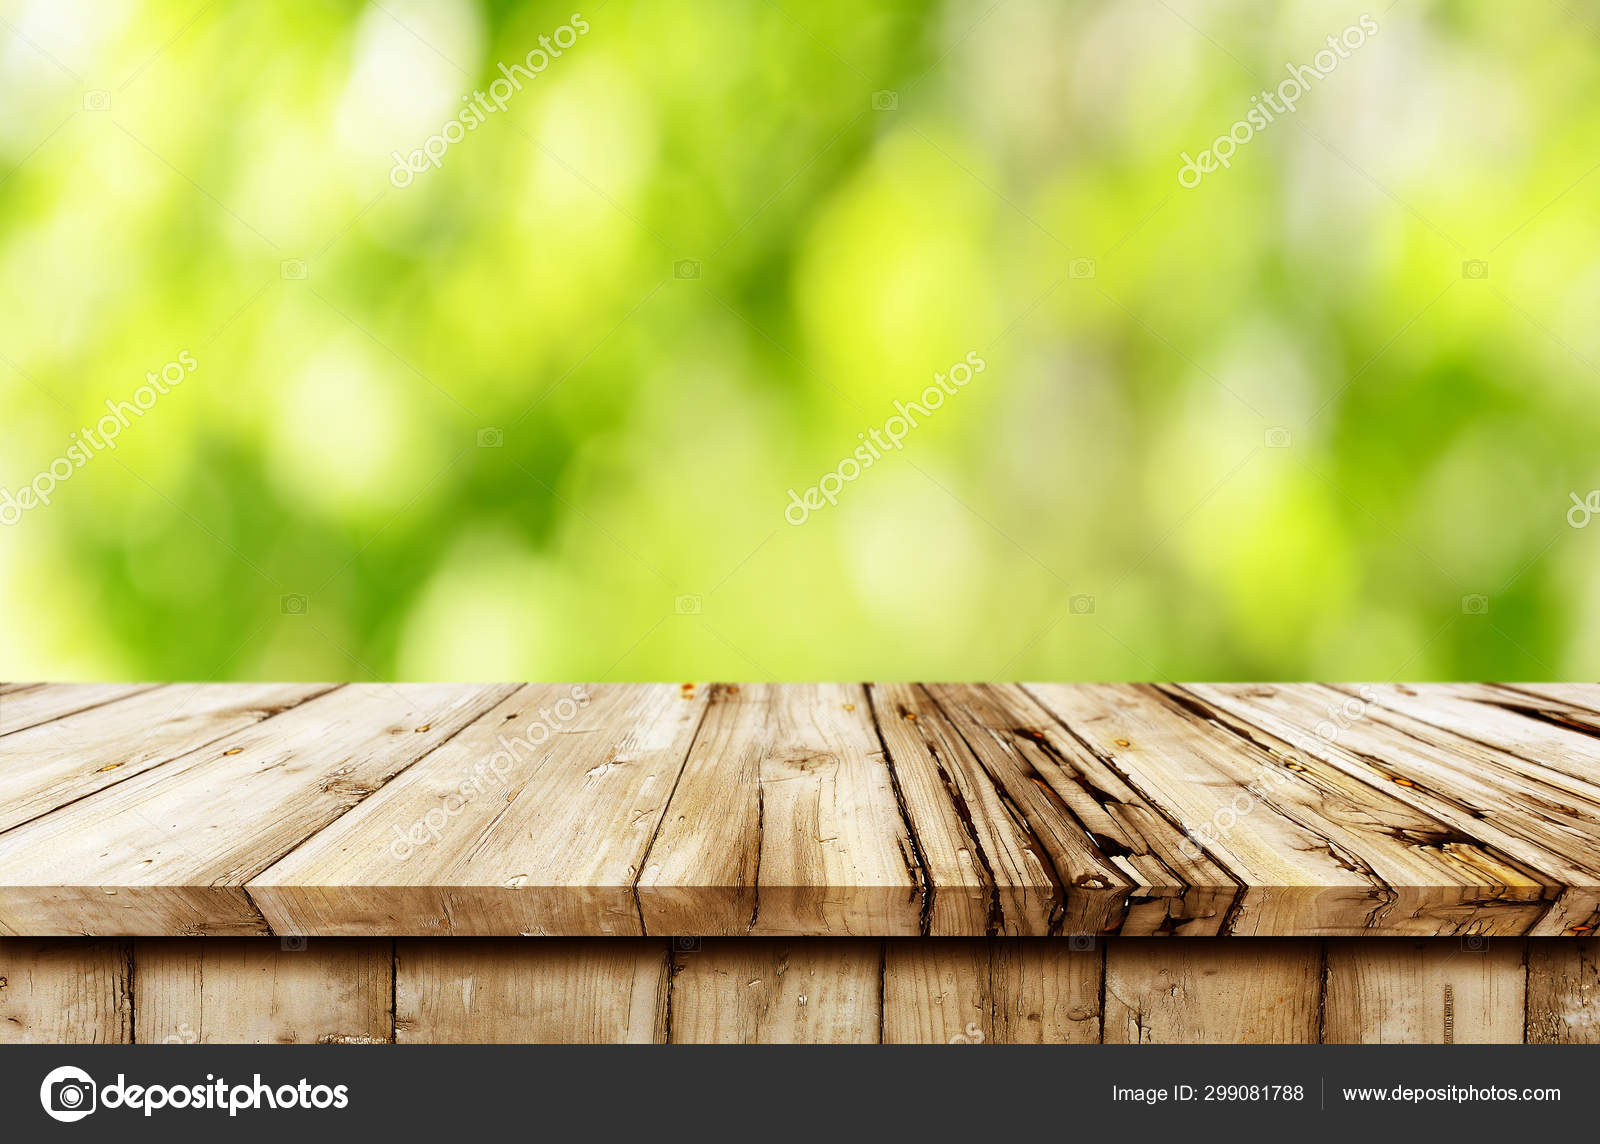 Nền bàn gỗ trống trải là điều mà chẳng ai muốn chứng kiến. Tuy nhiên, với hình ảnh này bạn sẽ được chiêm ngưỡng những chiếc bàn gỗ sáng bóng, tinh tế và đầy đủ cuốn hút. Hãy tưởng tượng sự sang trọng khi đặt những vật dụng trên bàn này.